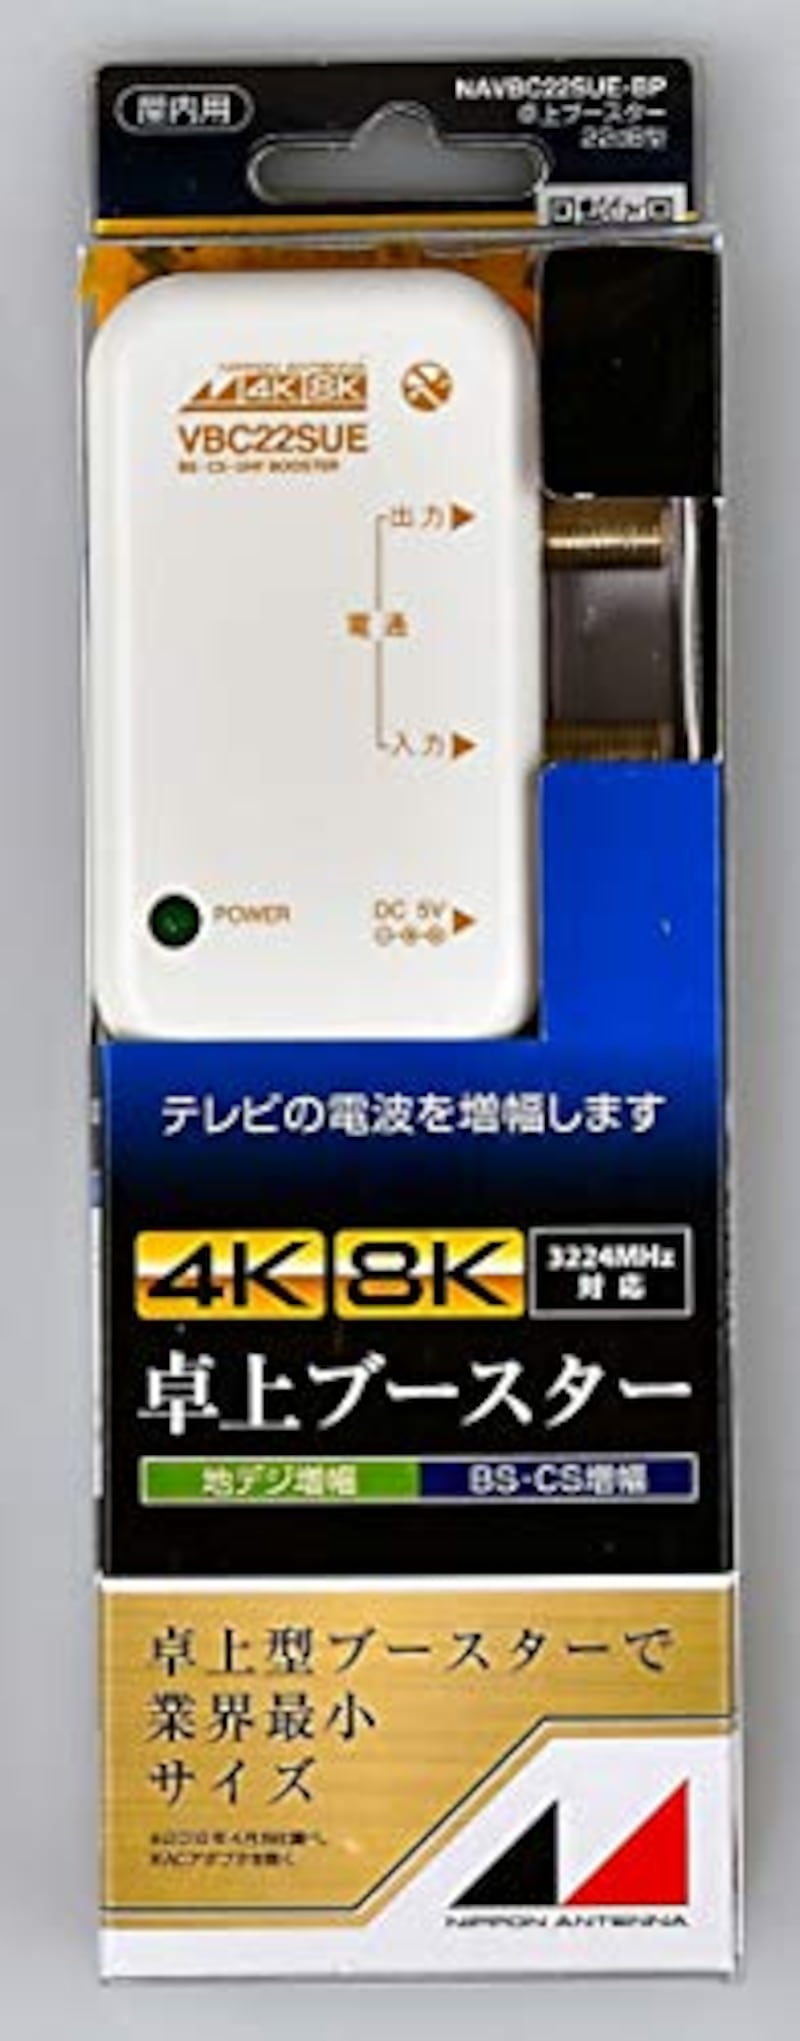 日本アンテナ,4K 8K 卓上ブースター,NAVBC22SUE-BP